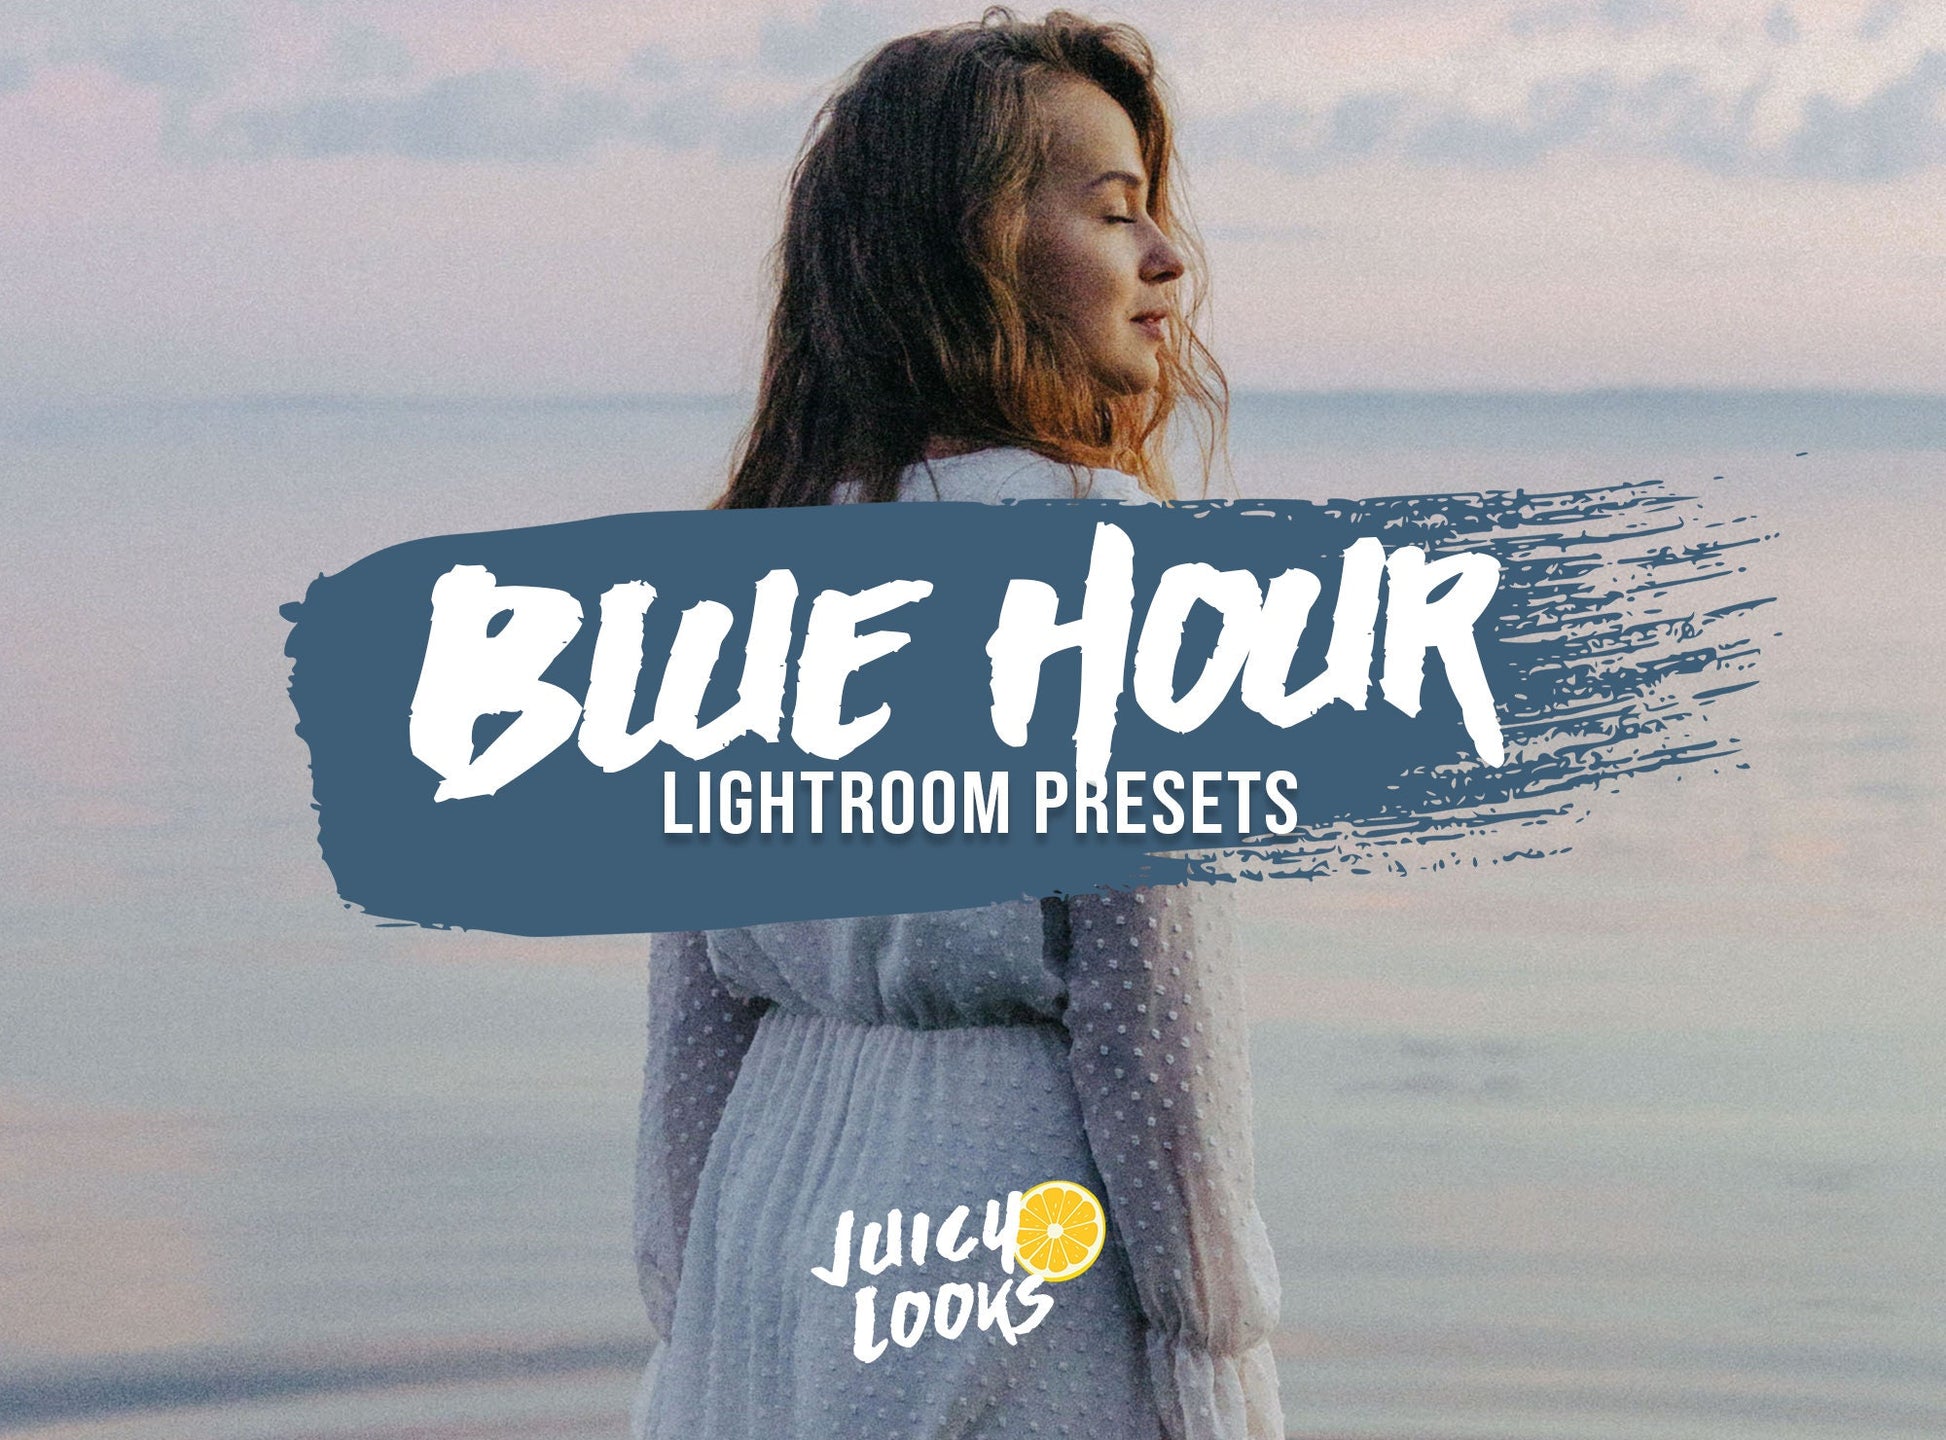 Blue Hour Lightroom Presets for Mobile & Desktop - Juicy Looks Presets